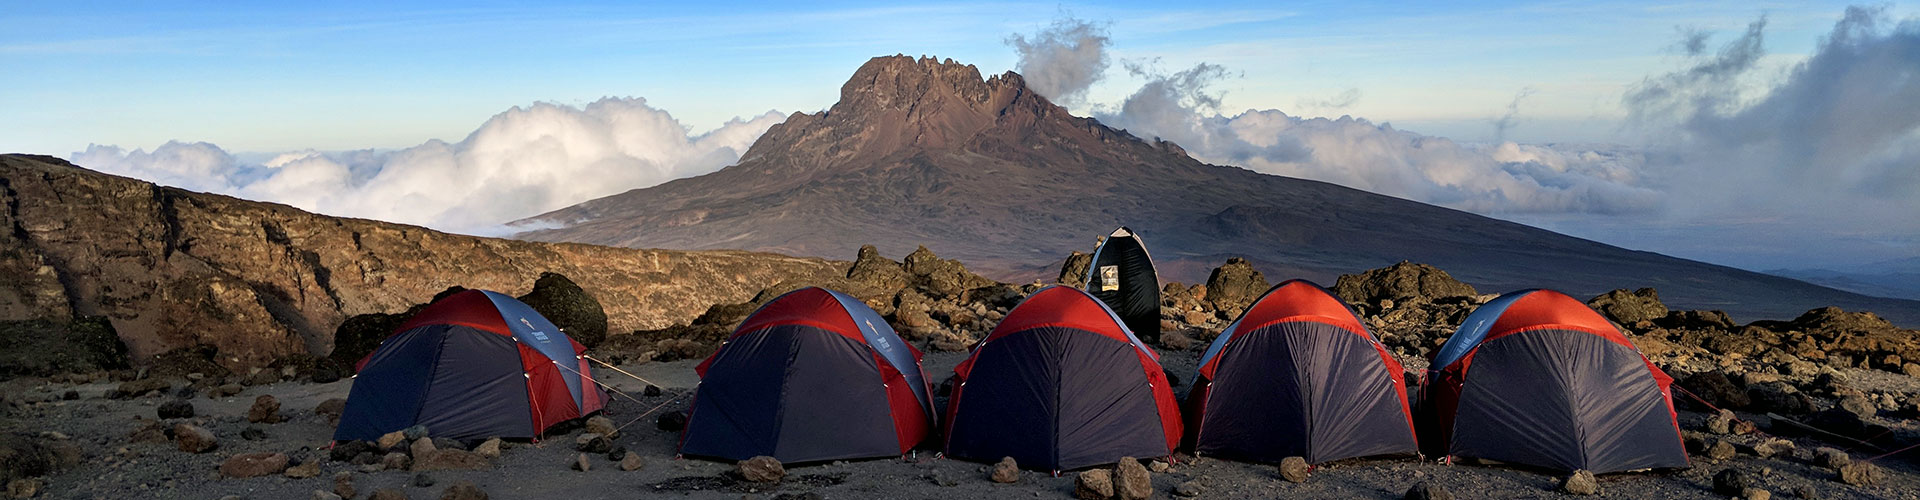 Accommodation on Mount Kilimanjaro Camps